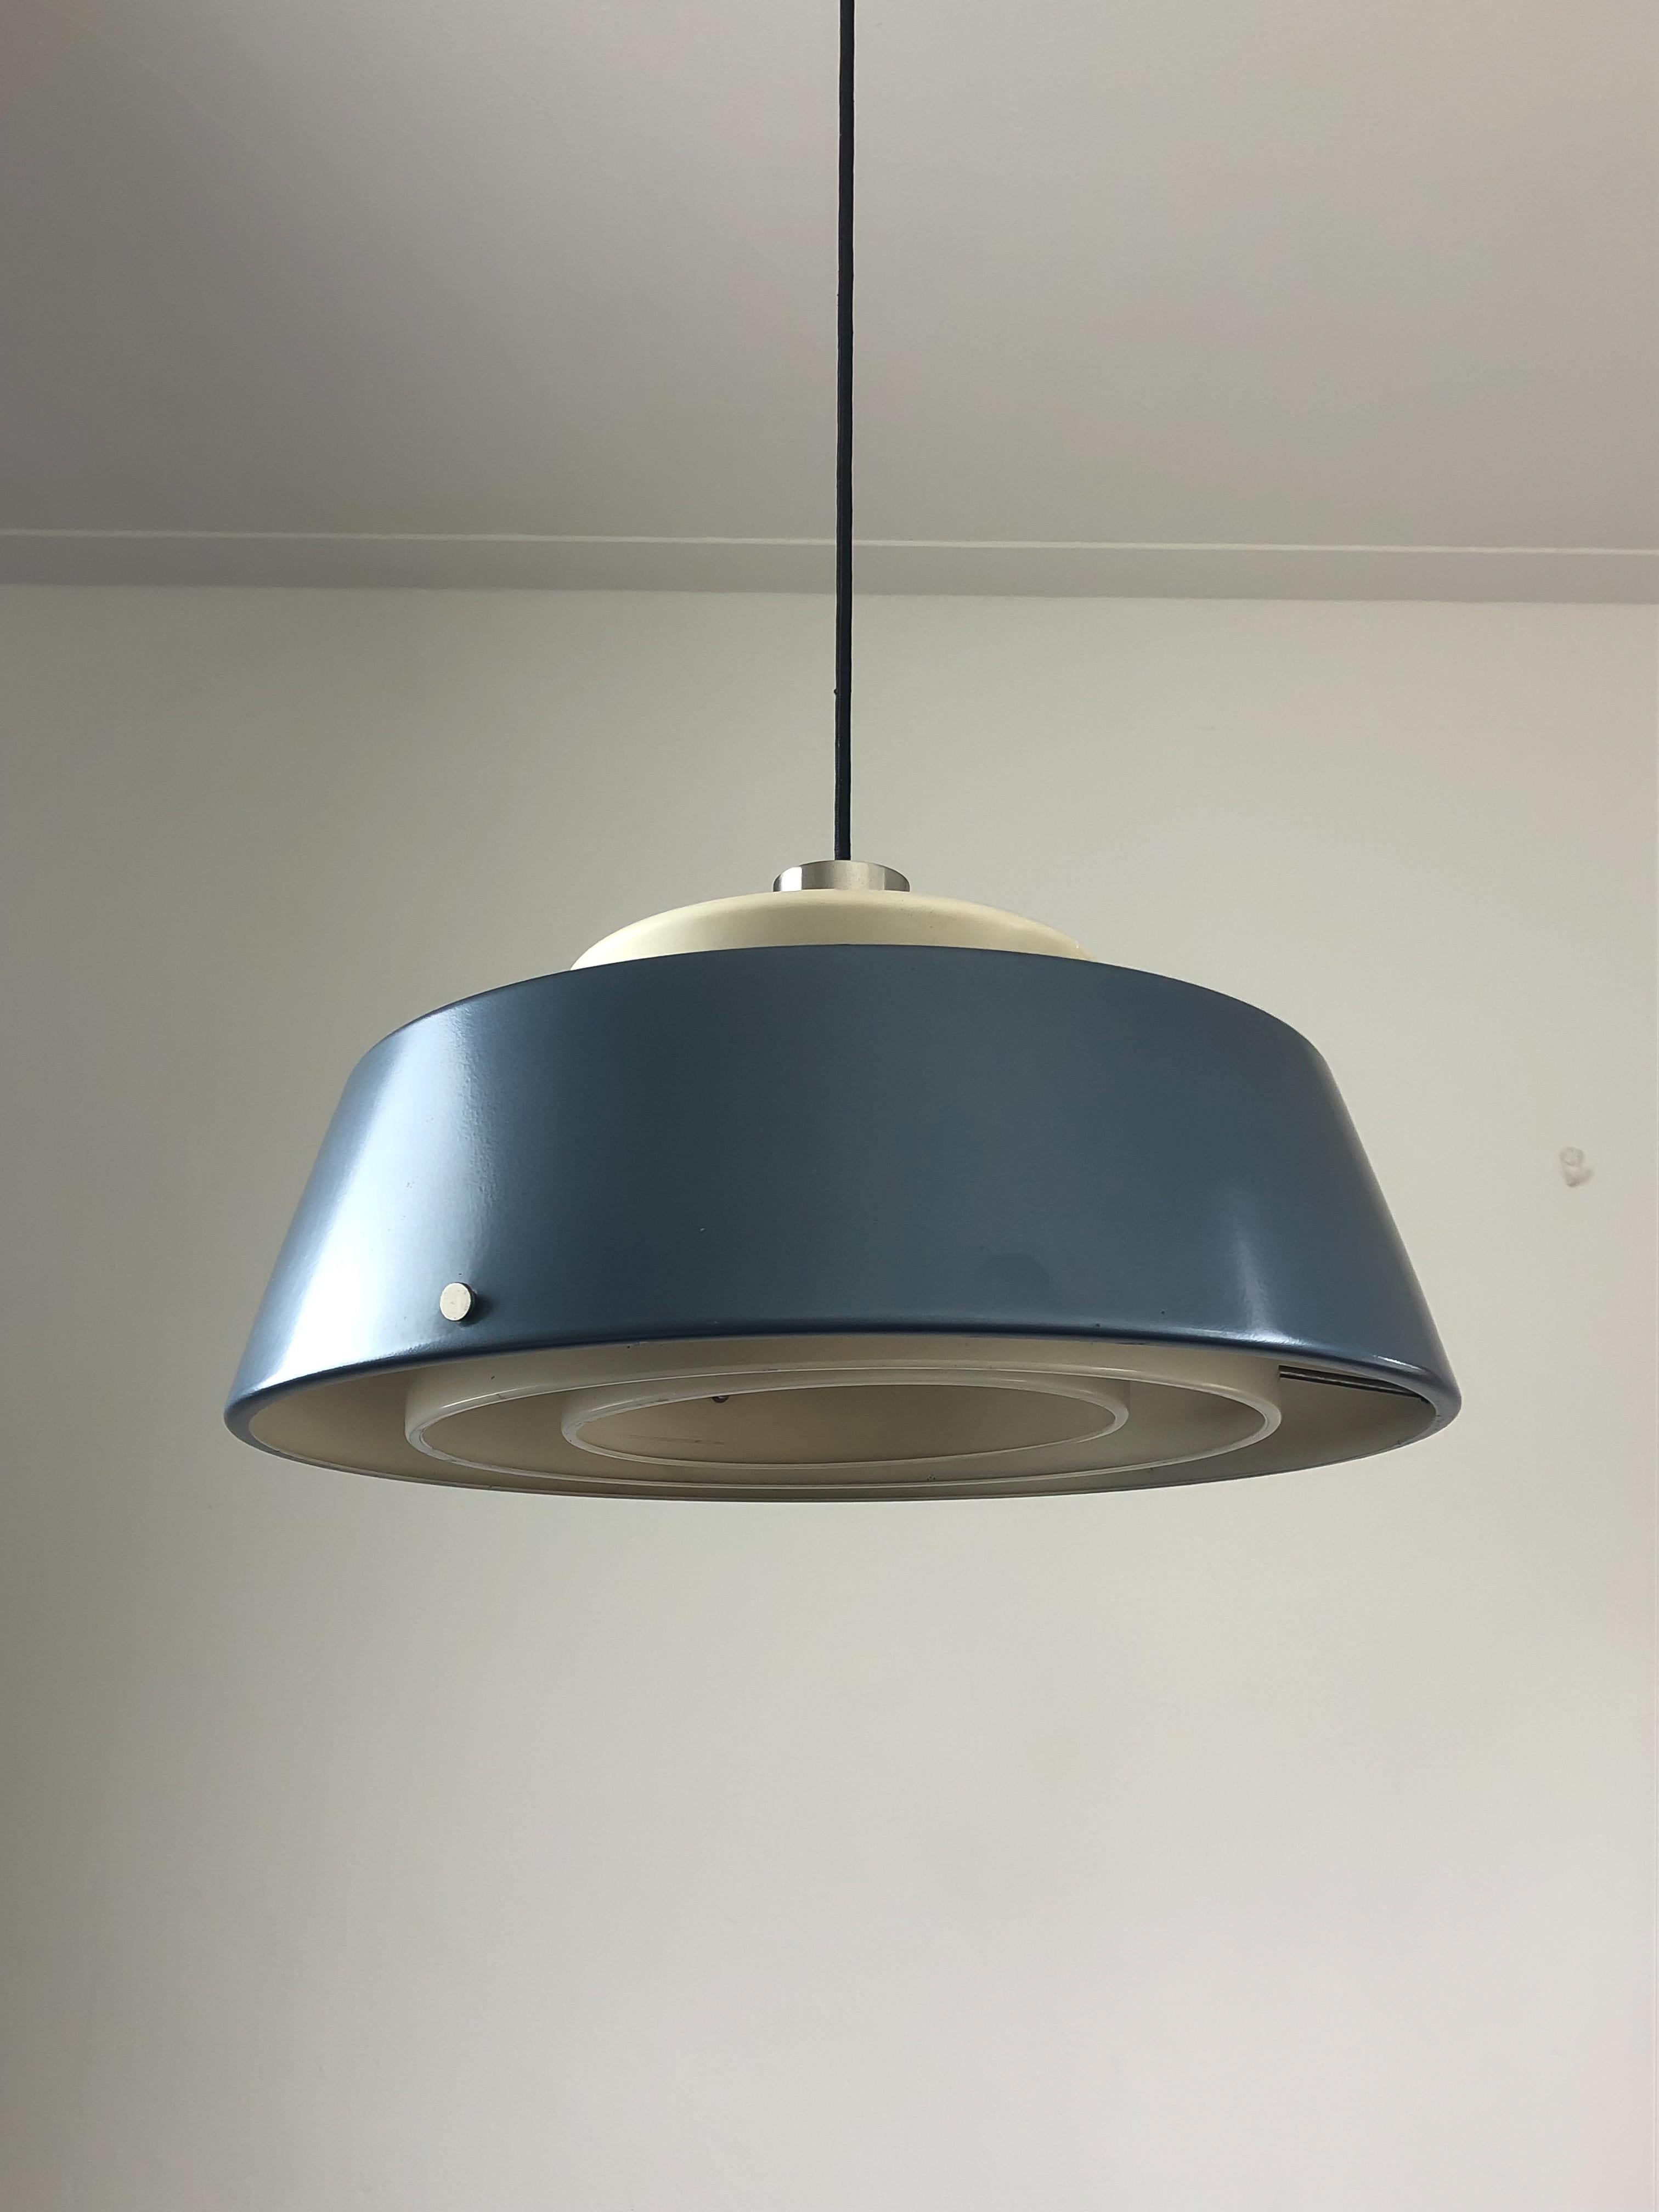 Lampe suspendue fabriquée par le fabricant de luminaires italien Stilnovo au début des années 1960. Le design de cette lampe présente un abat-jour laqué bleu métallique qui renferme de multiples structures blanches à l'intérieur. La lampe diffuse la